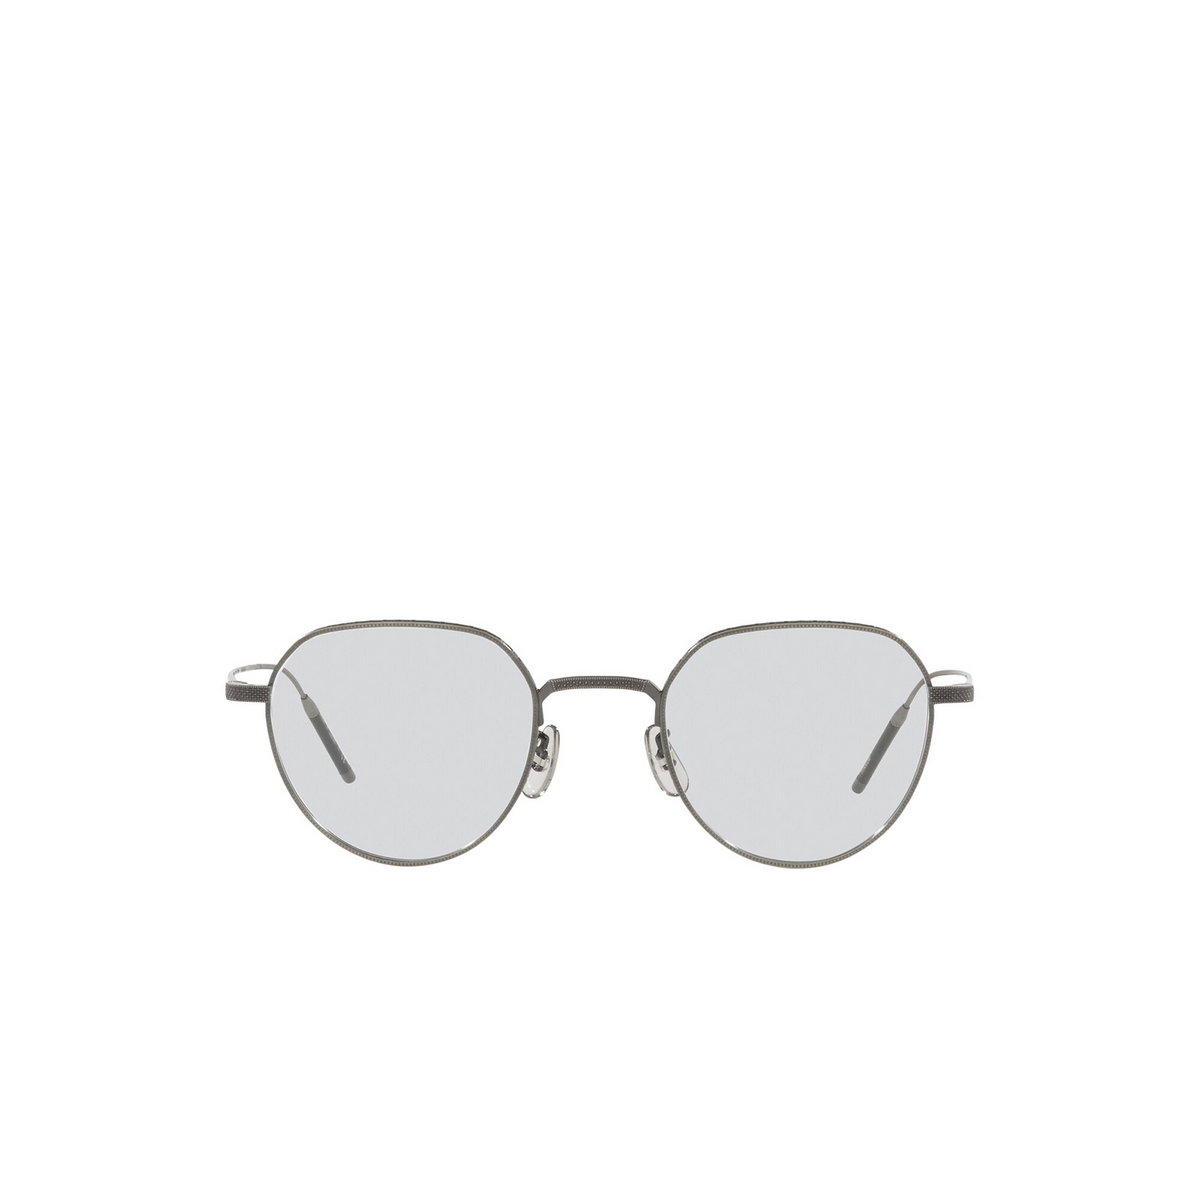 Oliver Peoples® Irregular Eyeglasses: Tk-4 OV1298T color Pewter 5076 - front view.